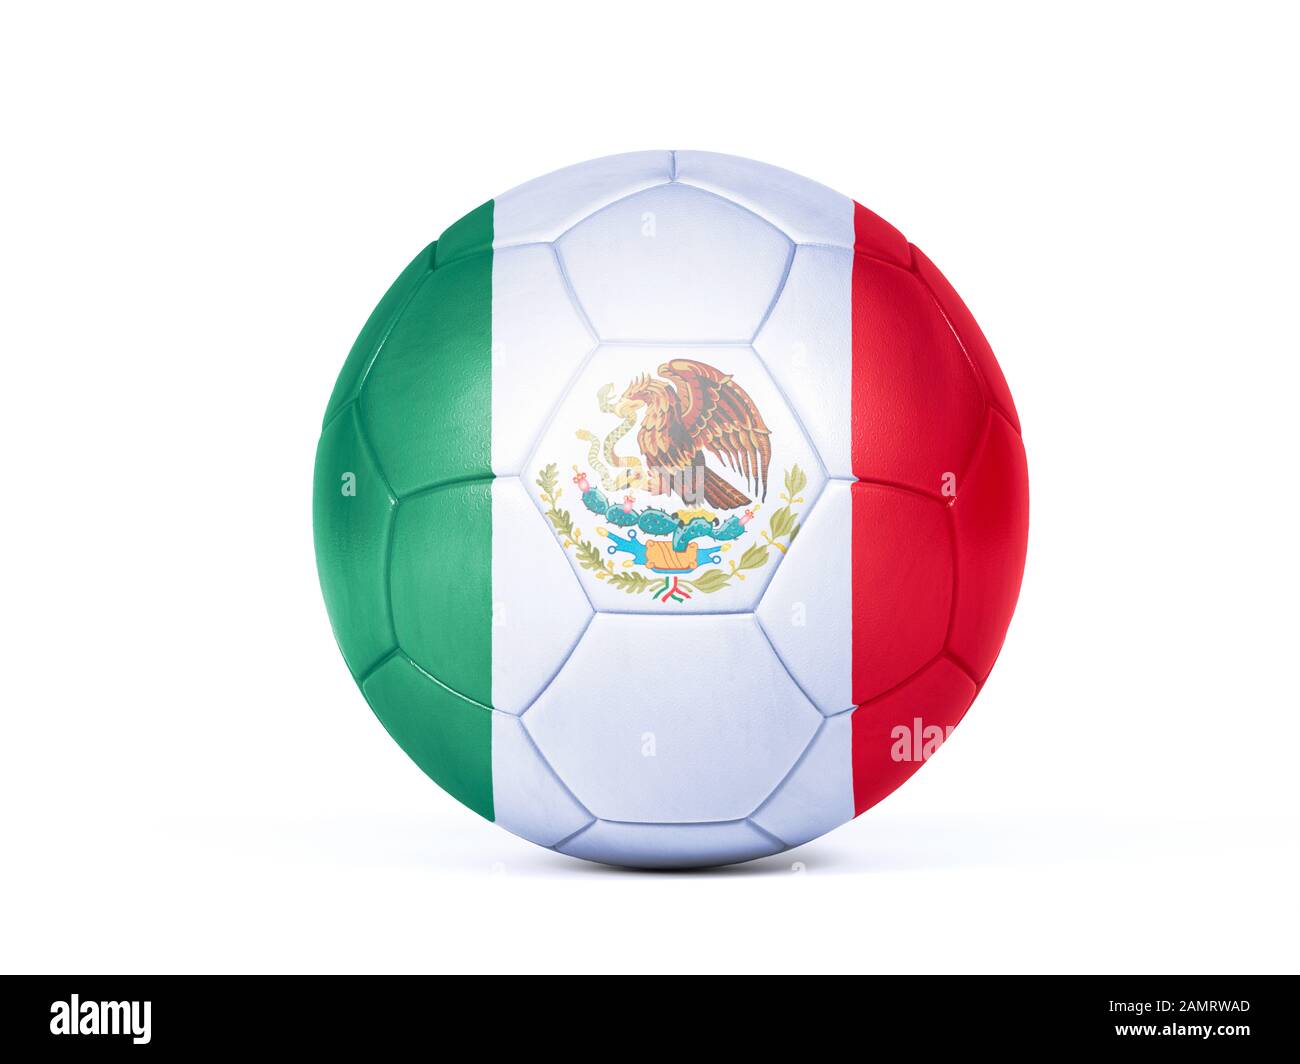 Pallone da calcio o da calcio con i colori della bandiera nazionale messicana concettuale del supporto di squadra in campionati o la Coppa del mondo isolato su bianco Foto Stock